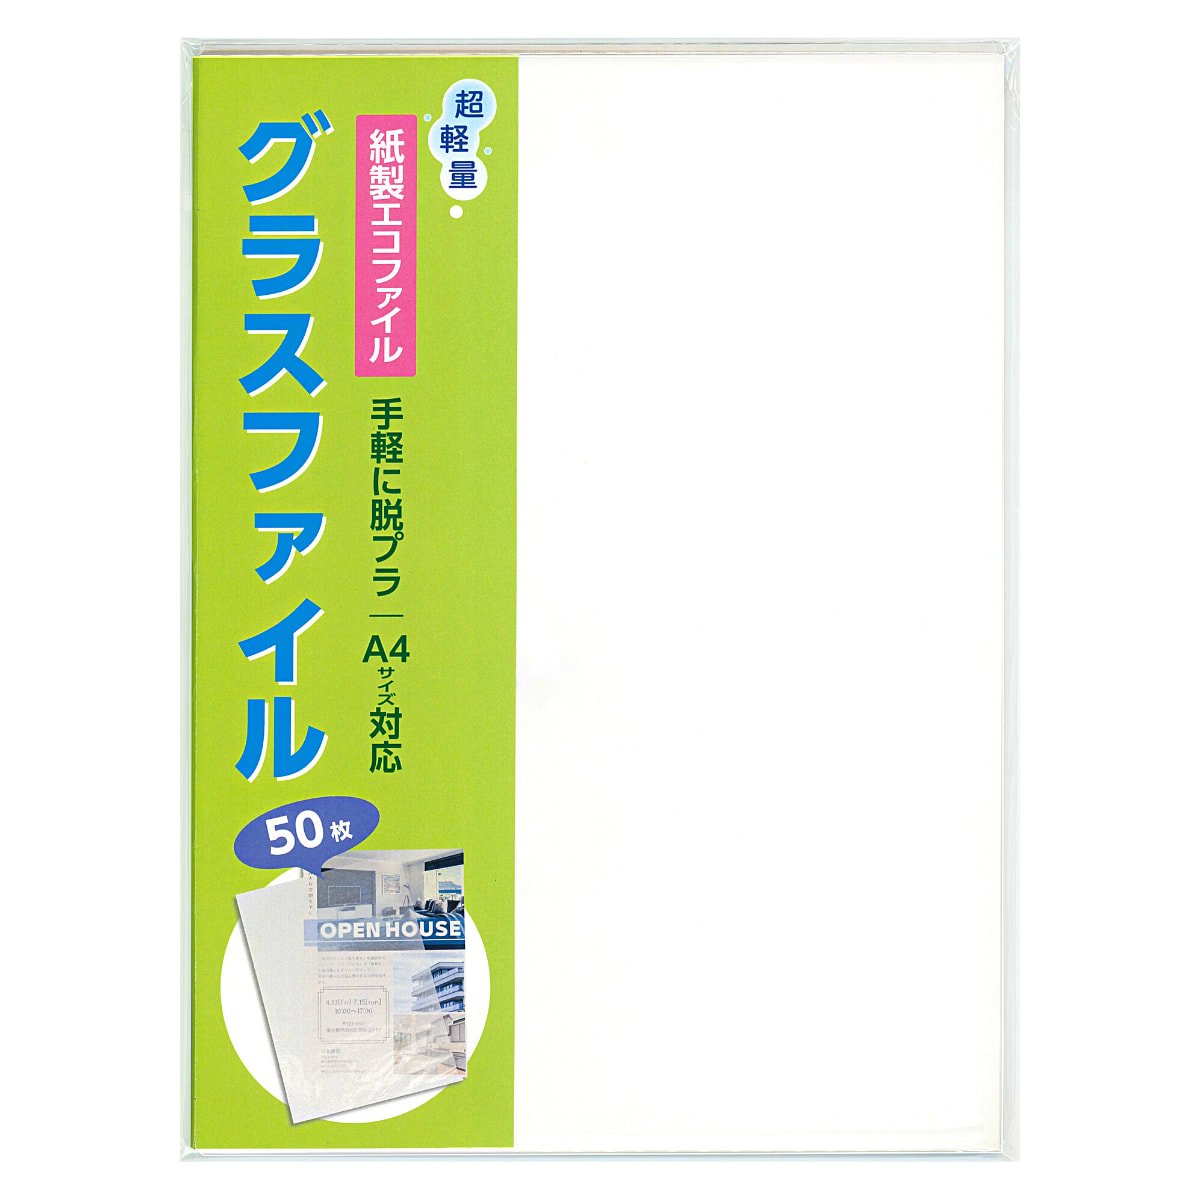 超軽量なグラシン紙を使用した紙製クリアファイルの販売を開始 脱プラスチックに紙素材で対応 お知らせ 吉田印刷所